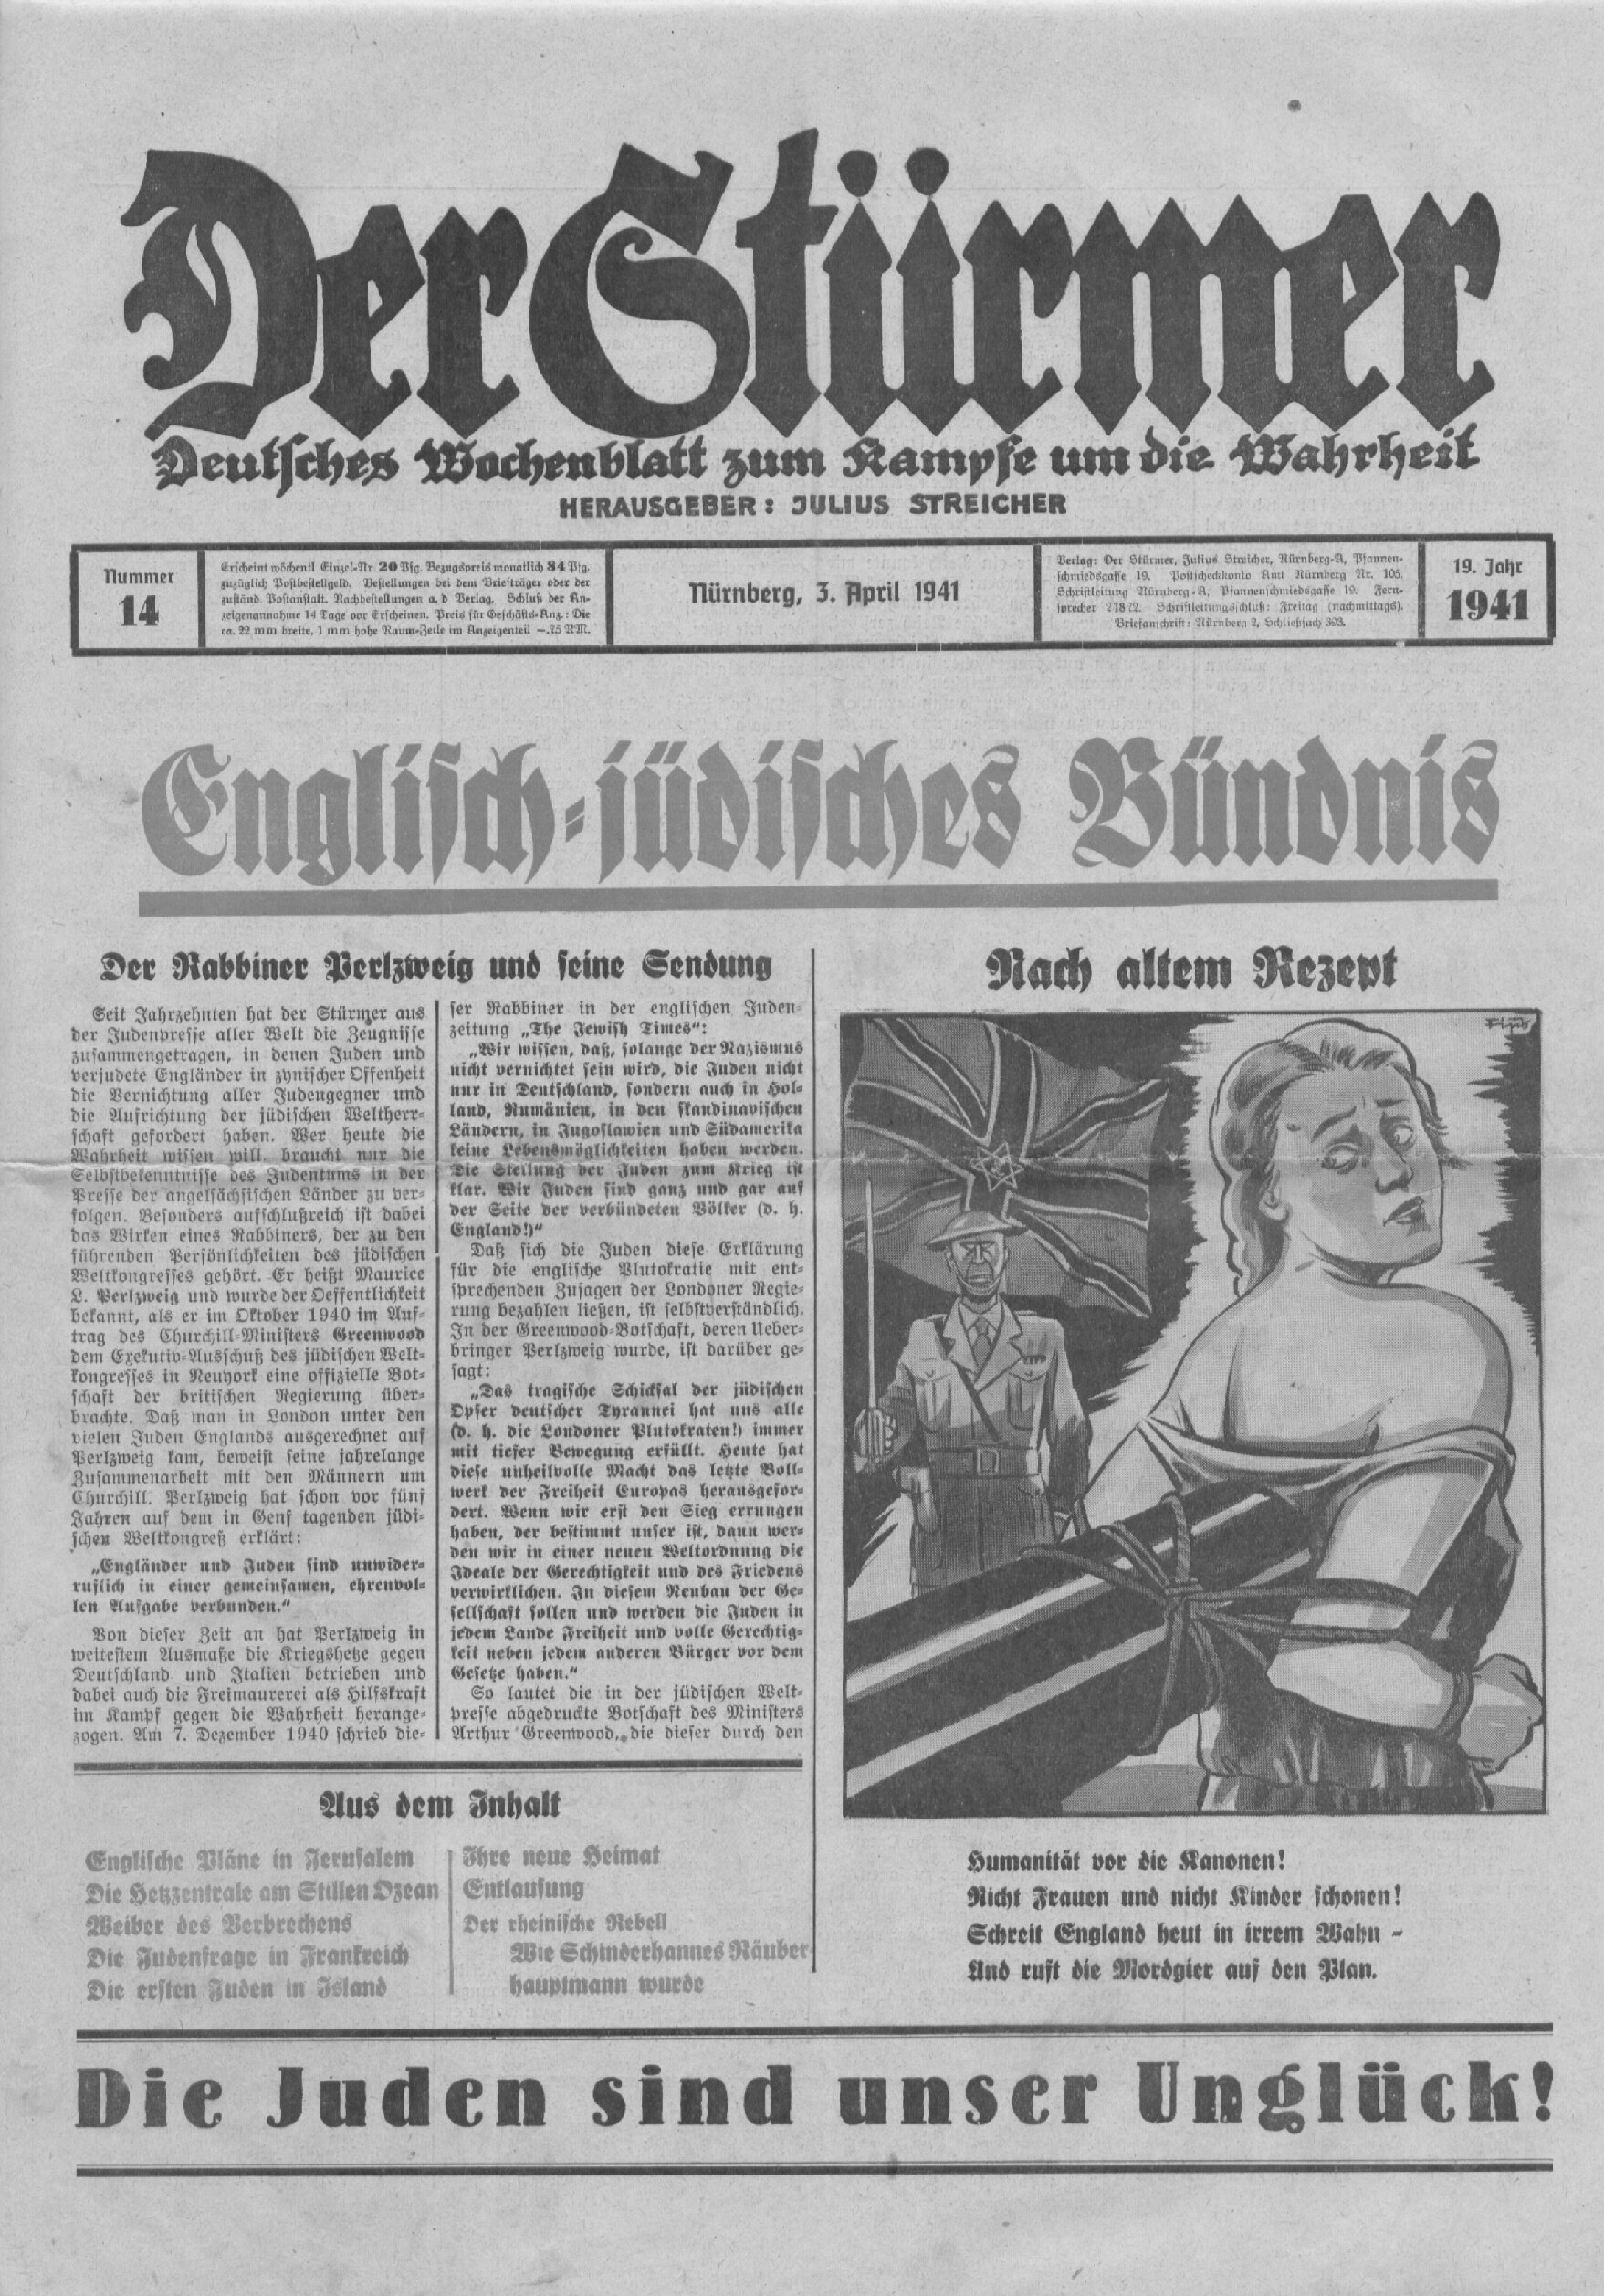 Der Stürmer - 1941 Nr. 14 - Englisch-jüdisches Bündnis